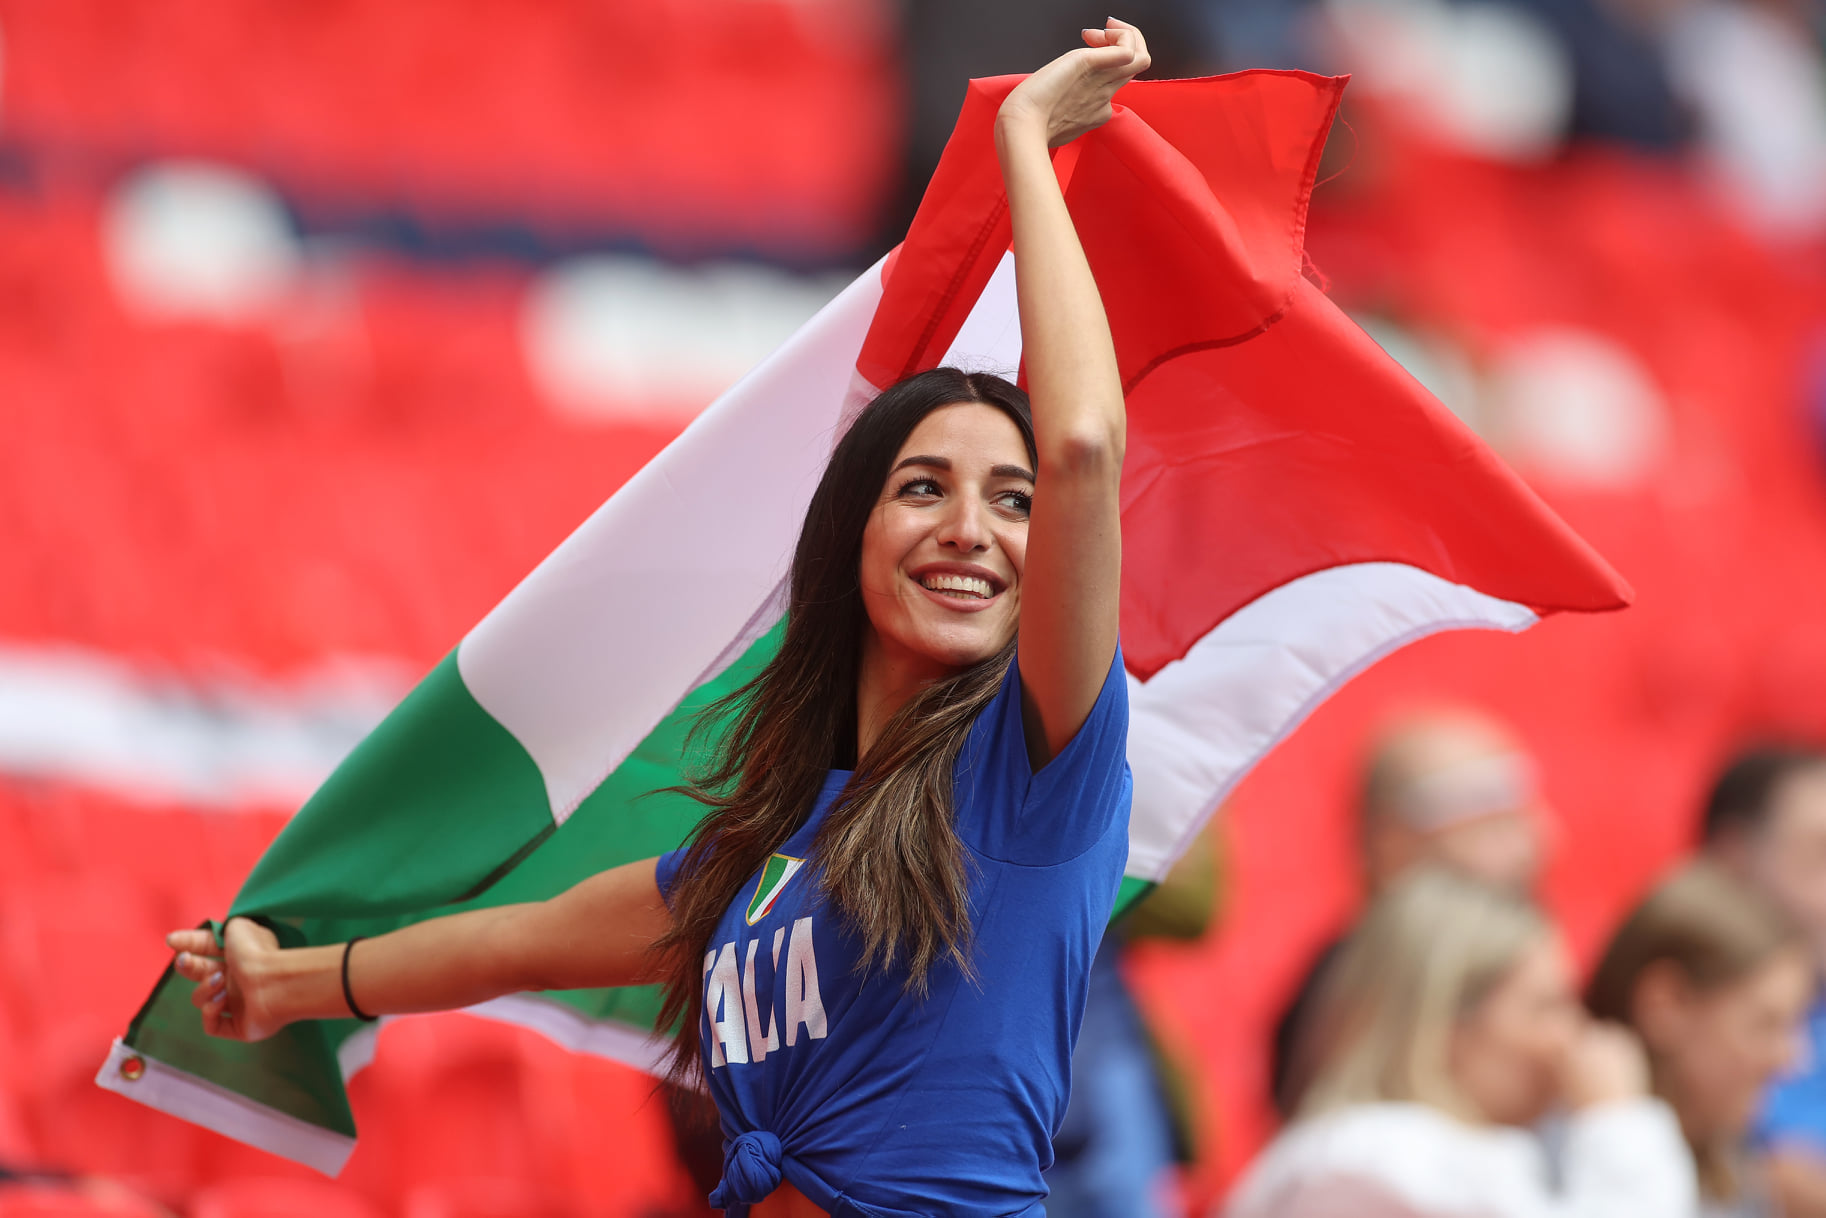 CĐV Italia cuồng nhiệt trước trận gặp Tây Ban Nha: Bóng đá là môn thể thao được ưa chuộng nhất tại châu Âu và đặc biệt là ở Tây Ban Nha và Italia. Trận đấu giữa hai đội tuyển đã tạo ra sự quan tâm lớn của người hâm mộ. Hãy chiêm ngưỡng những hình ảnh tuyệt đẹp về khán đài và tình yêu của CĐV Italia dành cho đội tuyển của mình trước trận đấu đầy quyết liệt với đối thủ Tây Ban Nha!